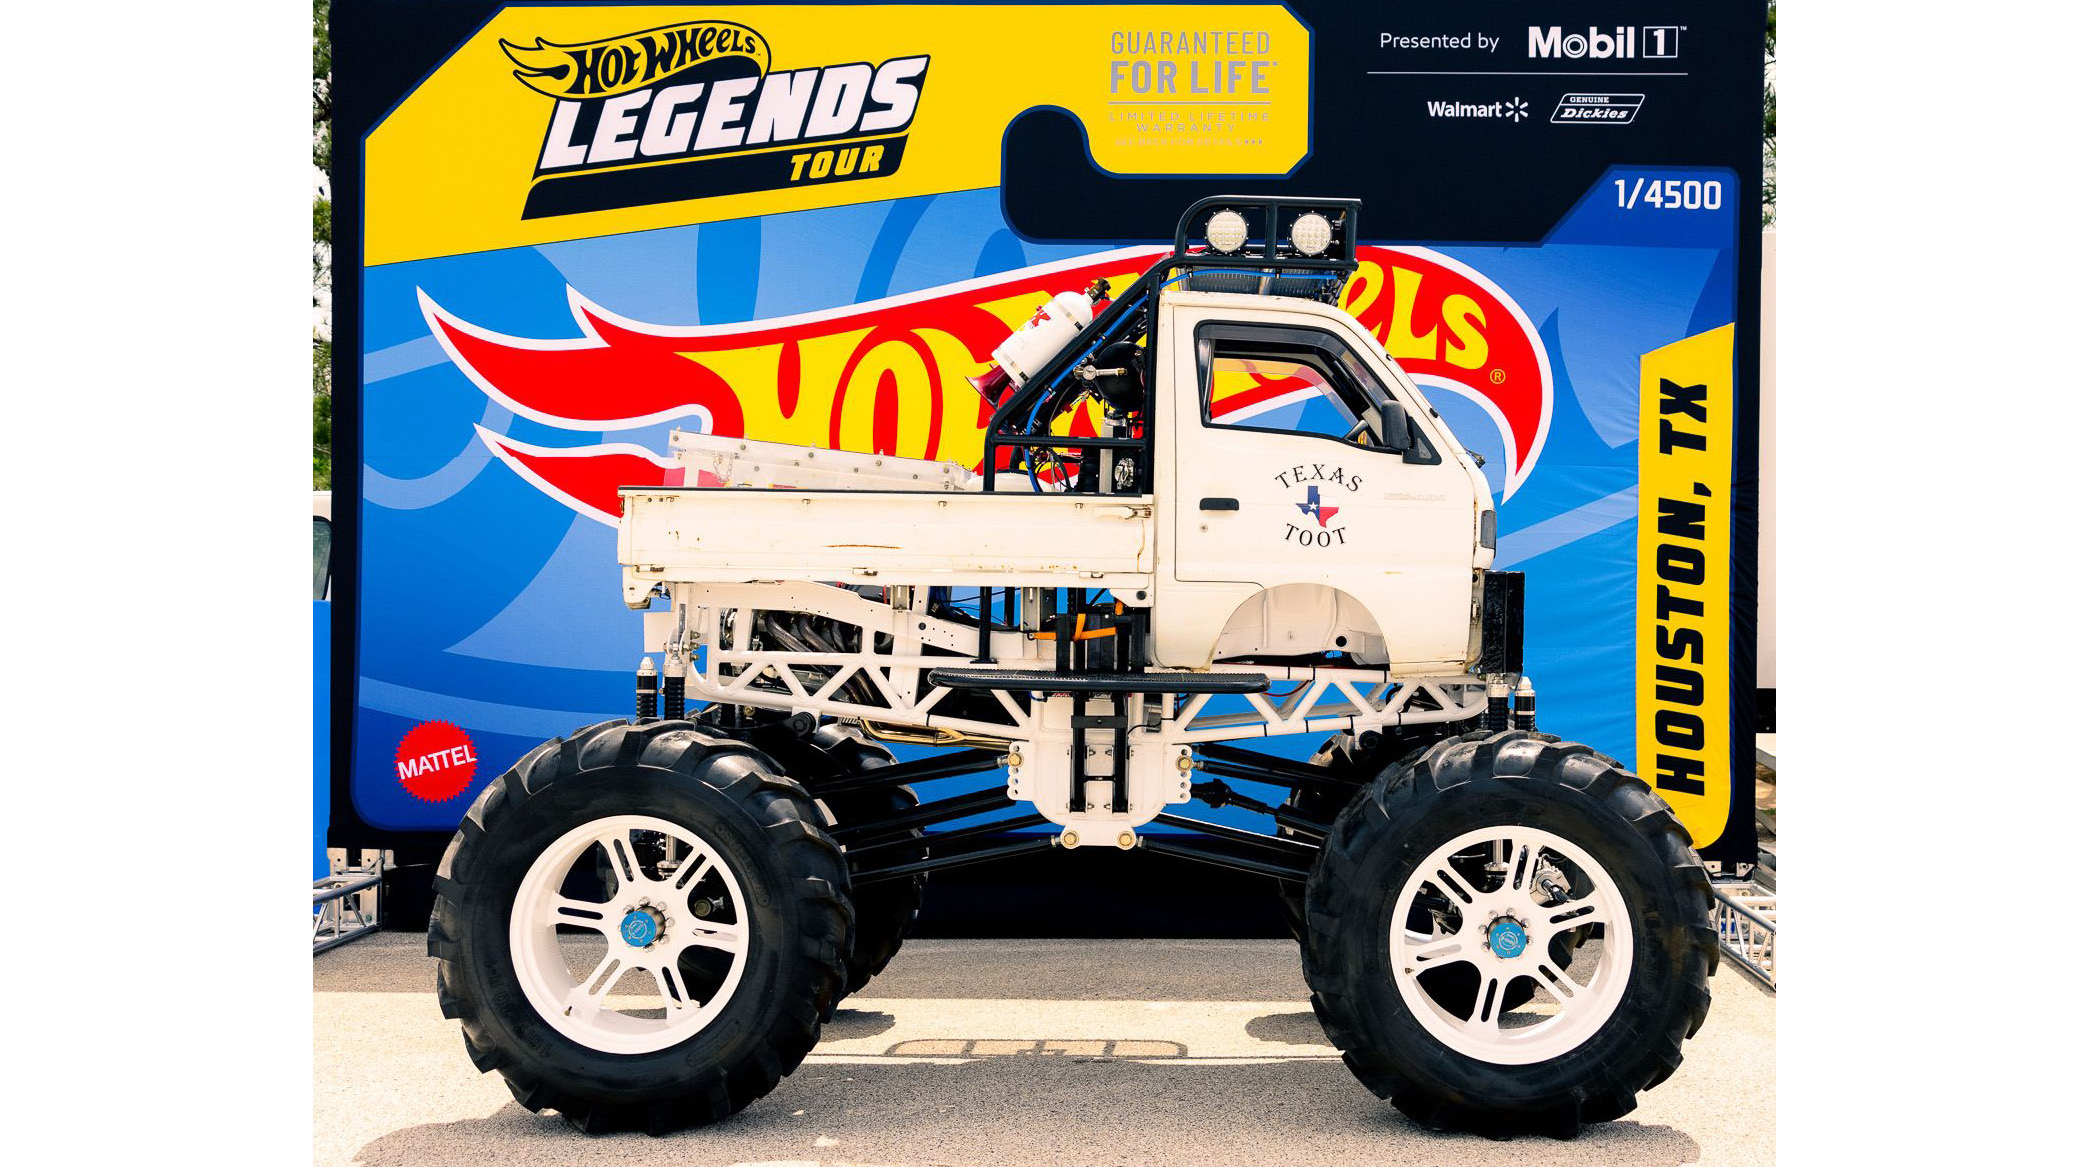 Autozam Scrum monster truck is the 2022 Hot Wheels Legends Tour winner